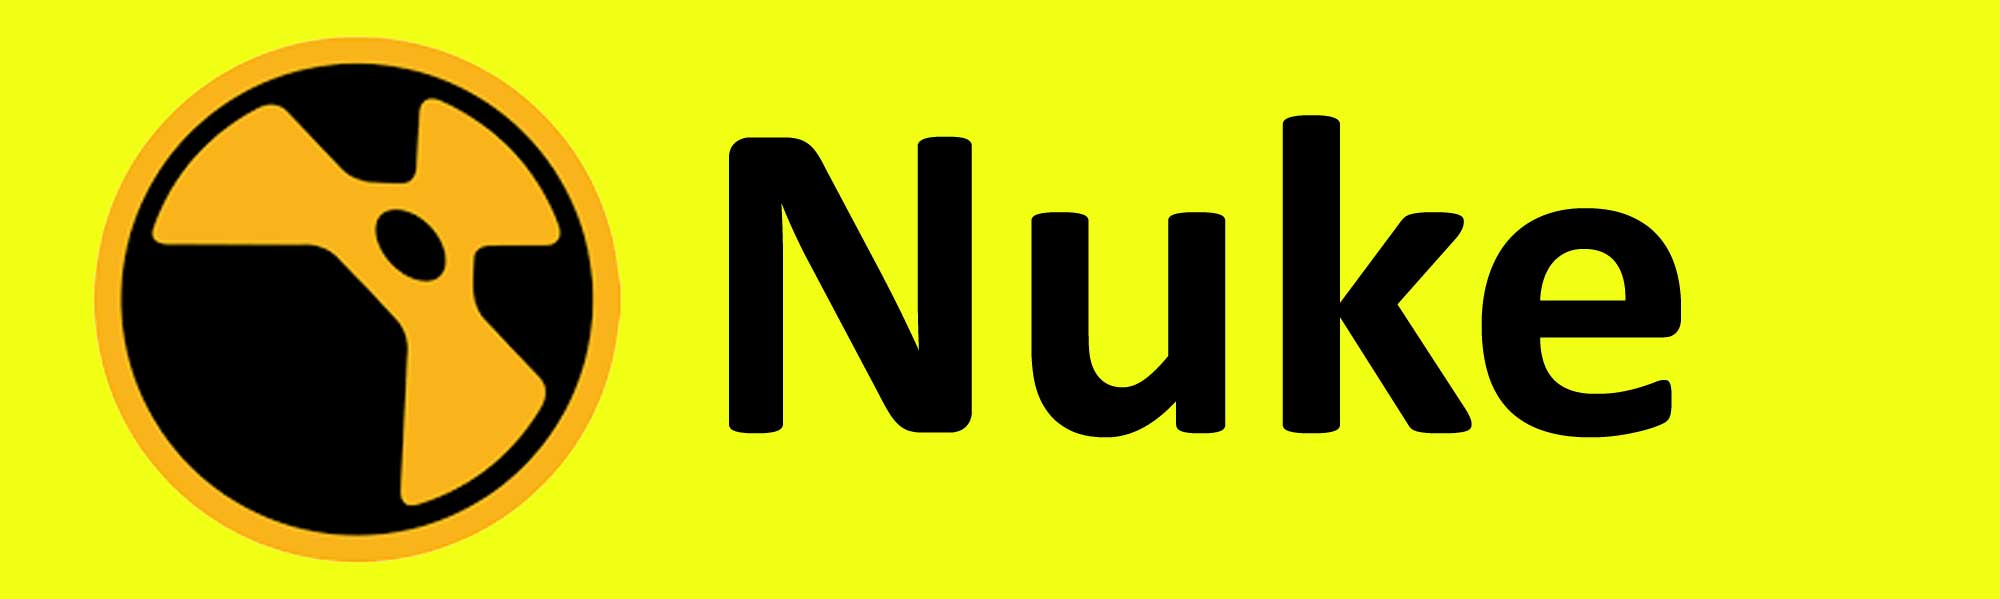 Nuke